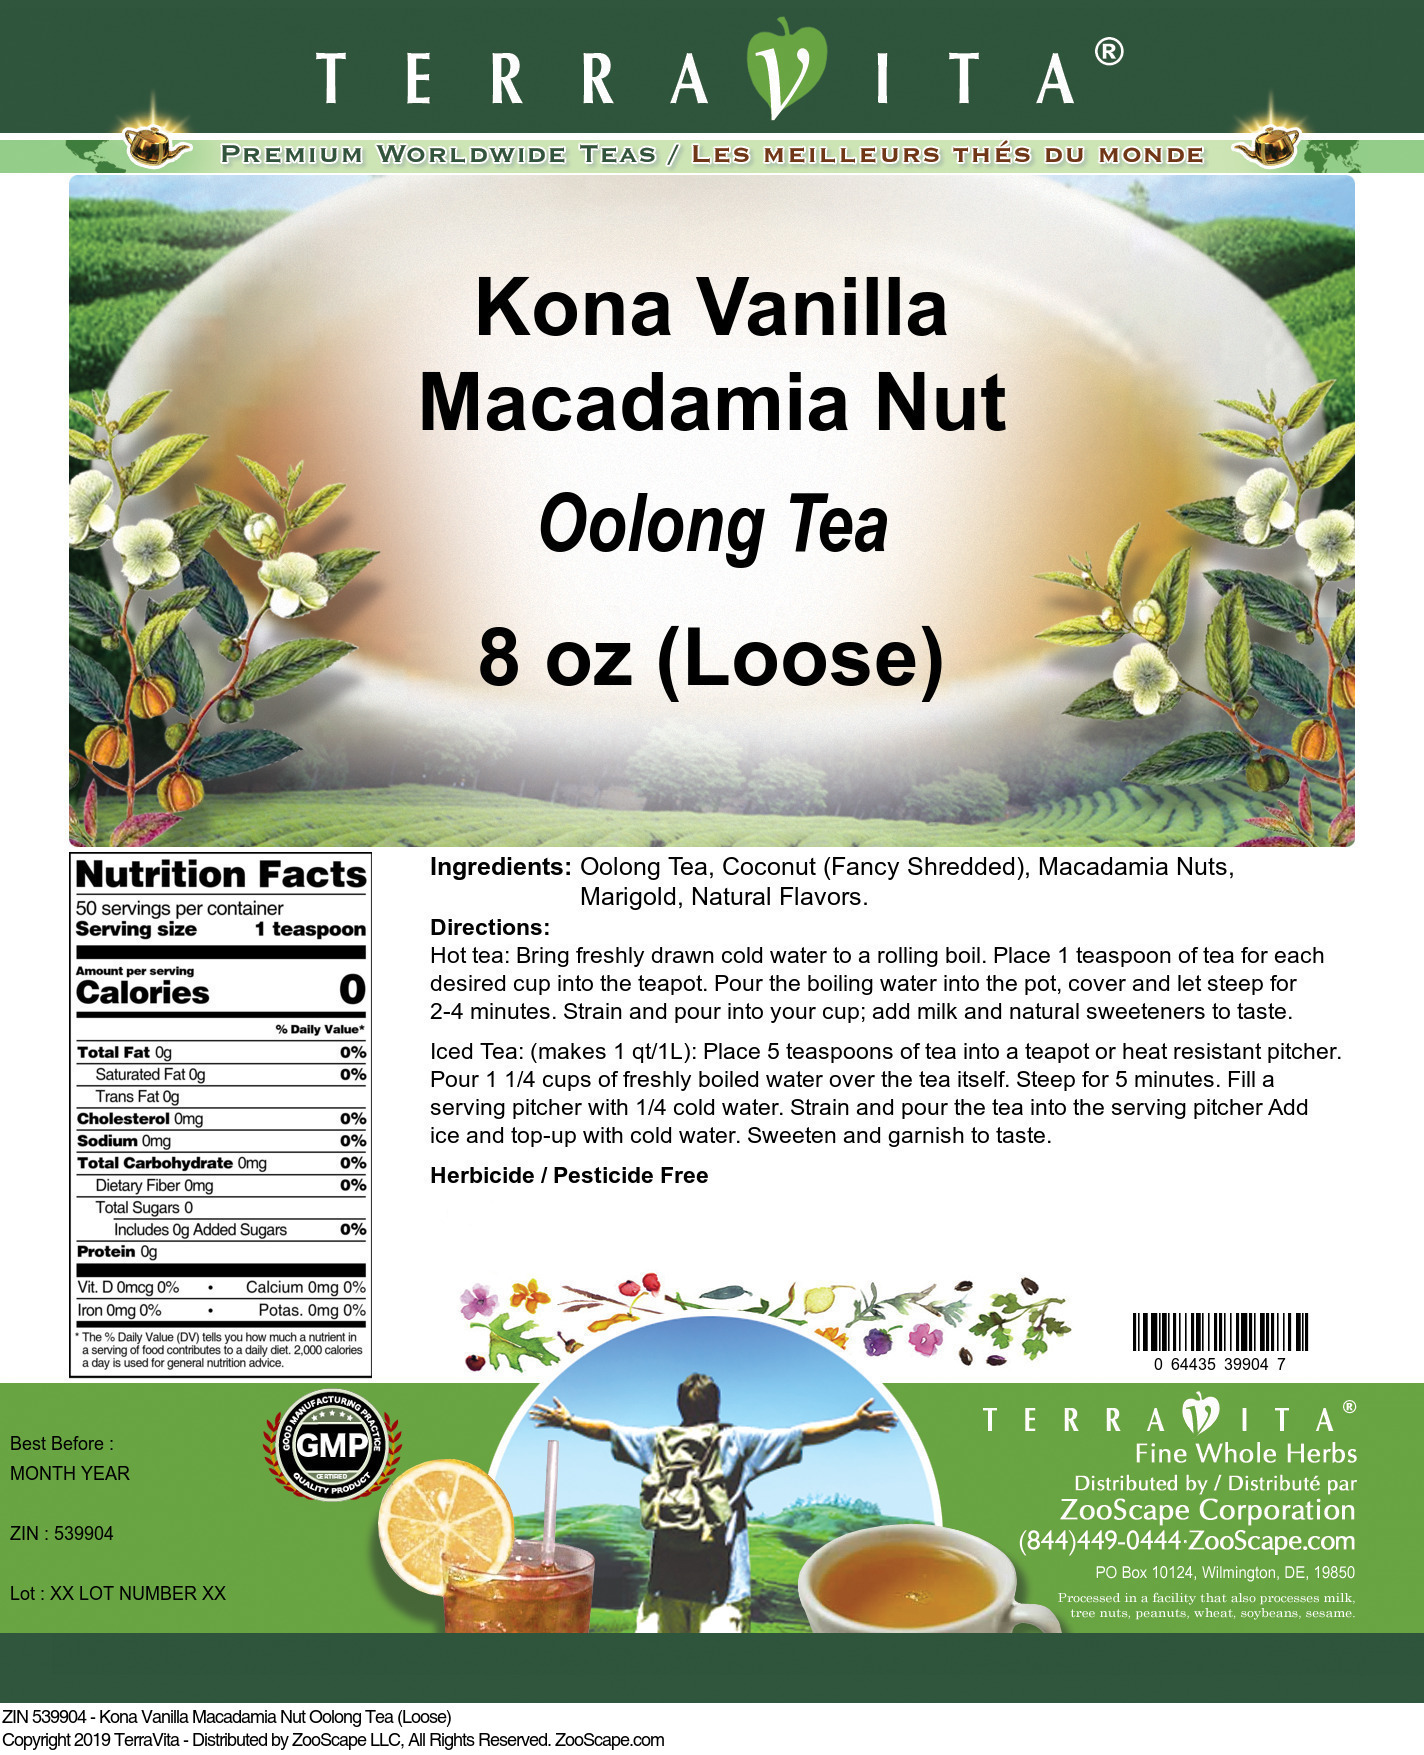 Kona Vanilla Macadamia Nut Oolong Tea (Loose) - Label